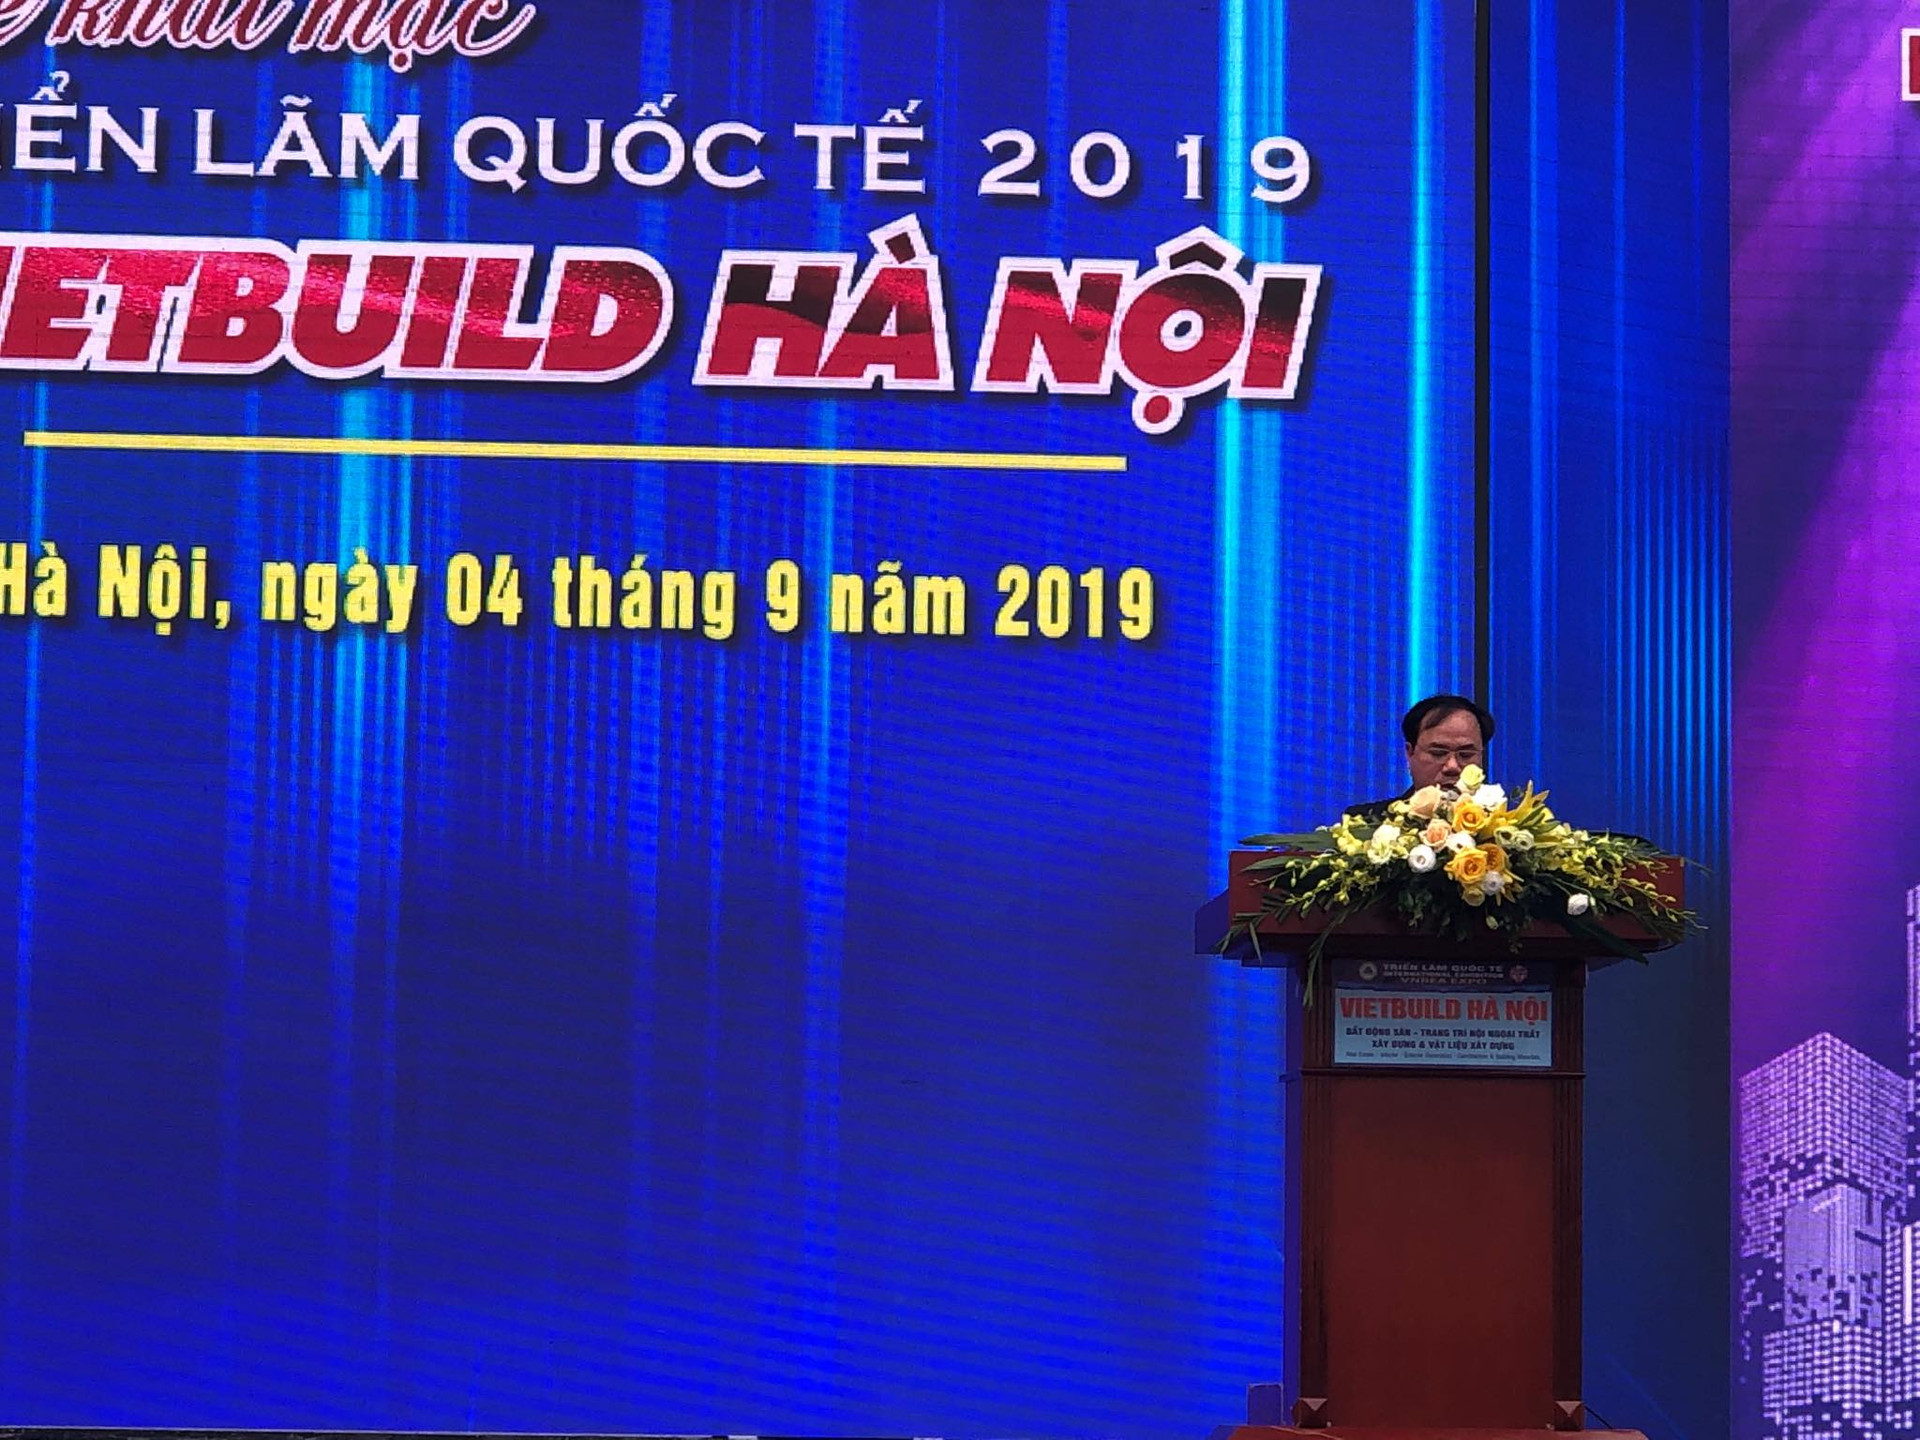 Khai mạc Triển lãm Quốc tế Vietbuild 2019 tại Hà Nội